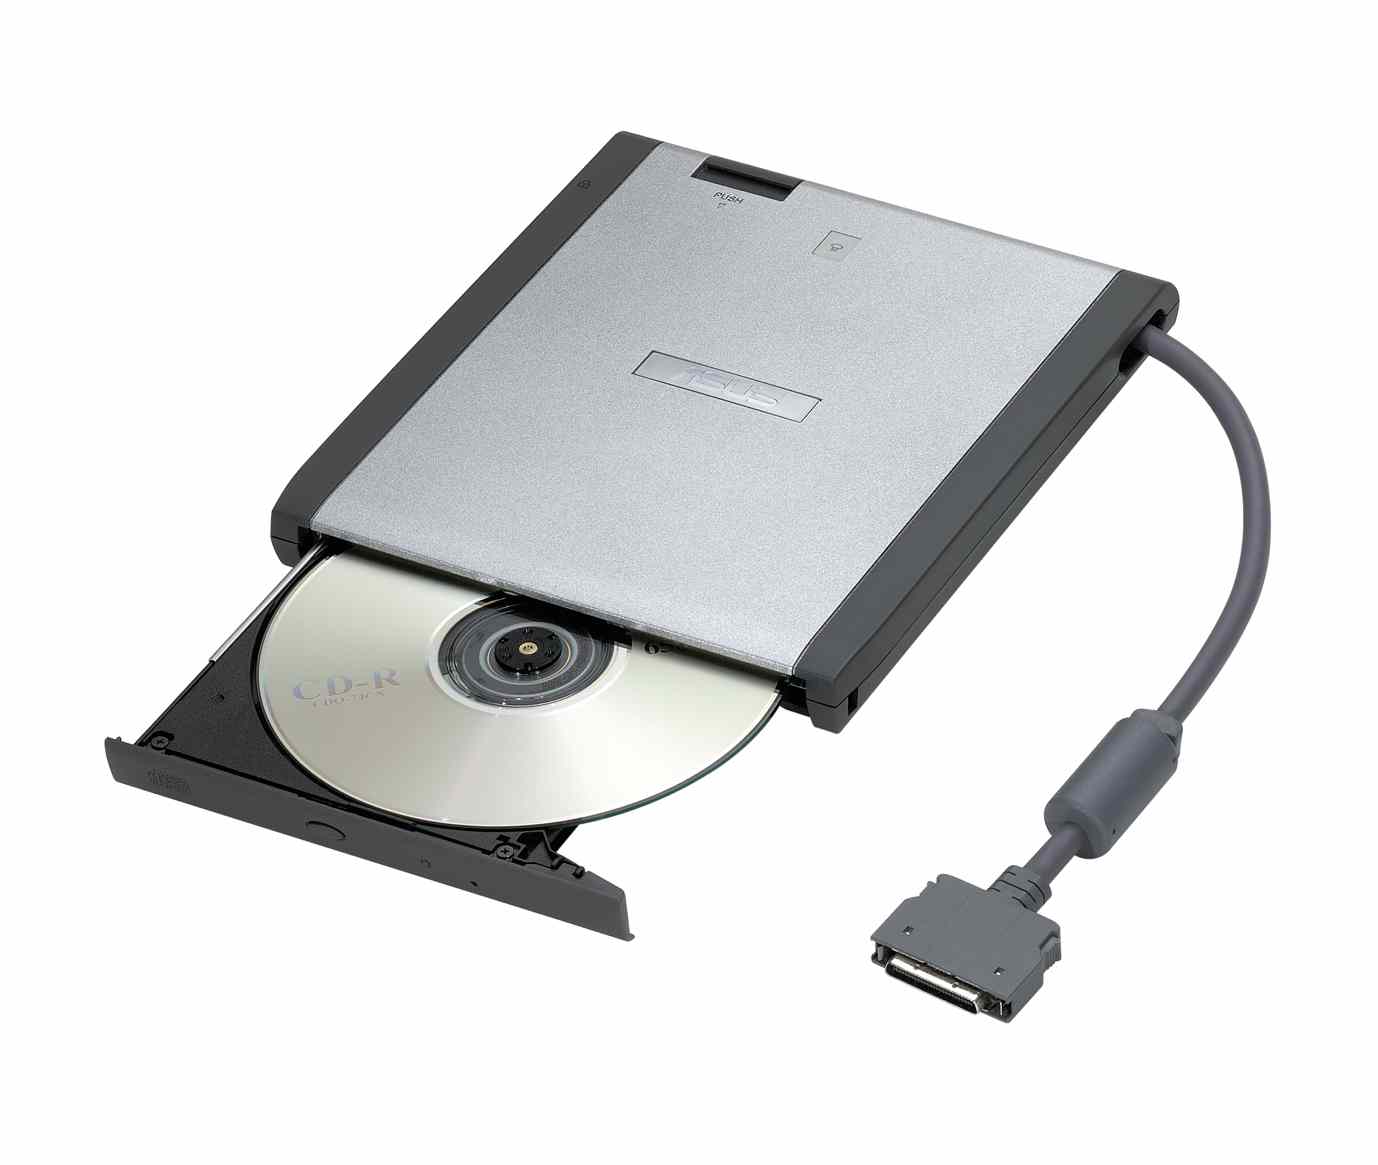 Сд для ноутбука. Дисковод ЕС-6075. Дисковод DVD-RW ASUS 1817. Привод CD 52x LG. Адаптер для СД привода для ноутбука ASUS.